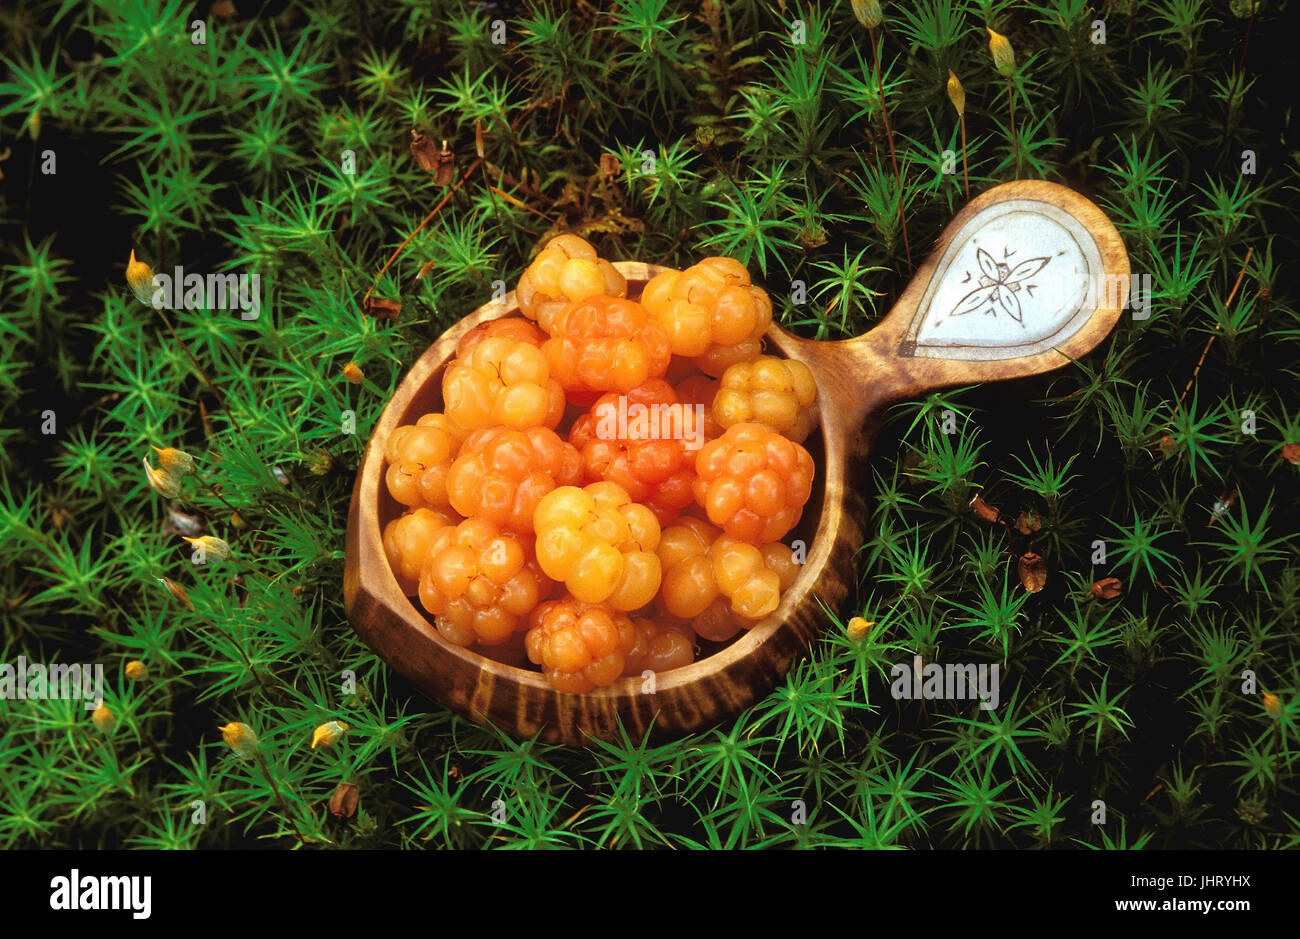 'Moltebeeren, torba more, torba more (Rubus chamaemorus) in un handmade samischen abbeveratoio di legno di betulla con inserto da titolare di pensione o di rendita è Foto Stock